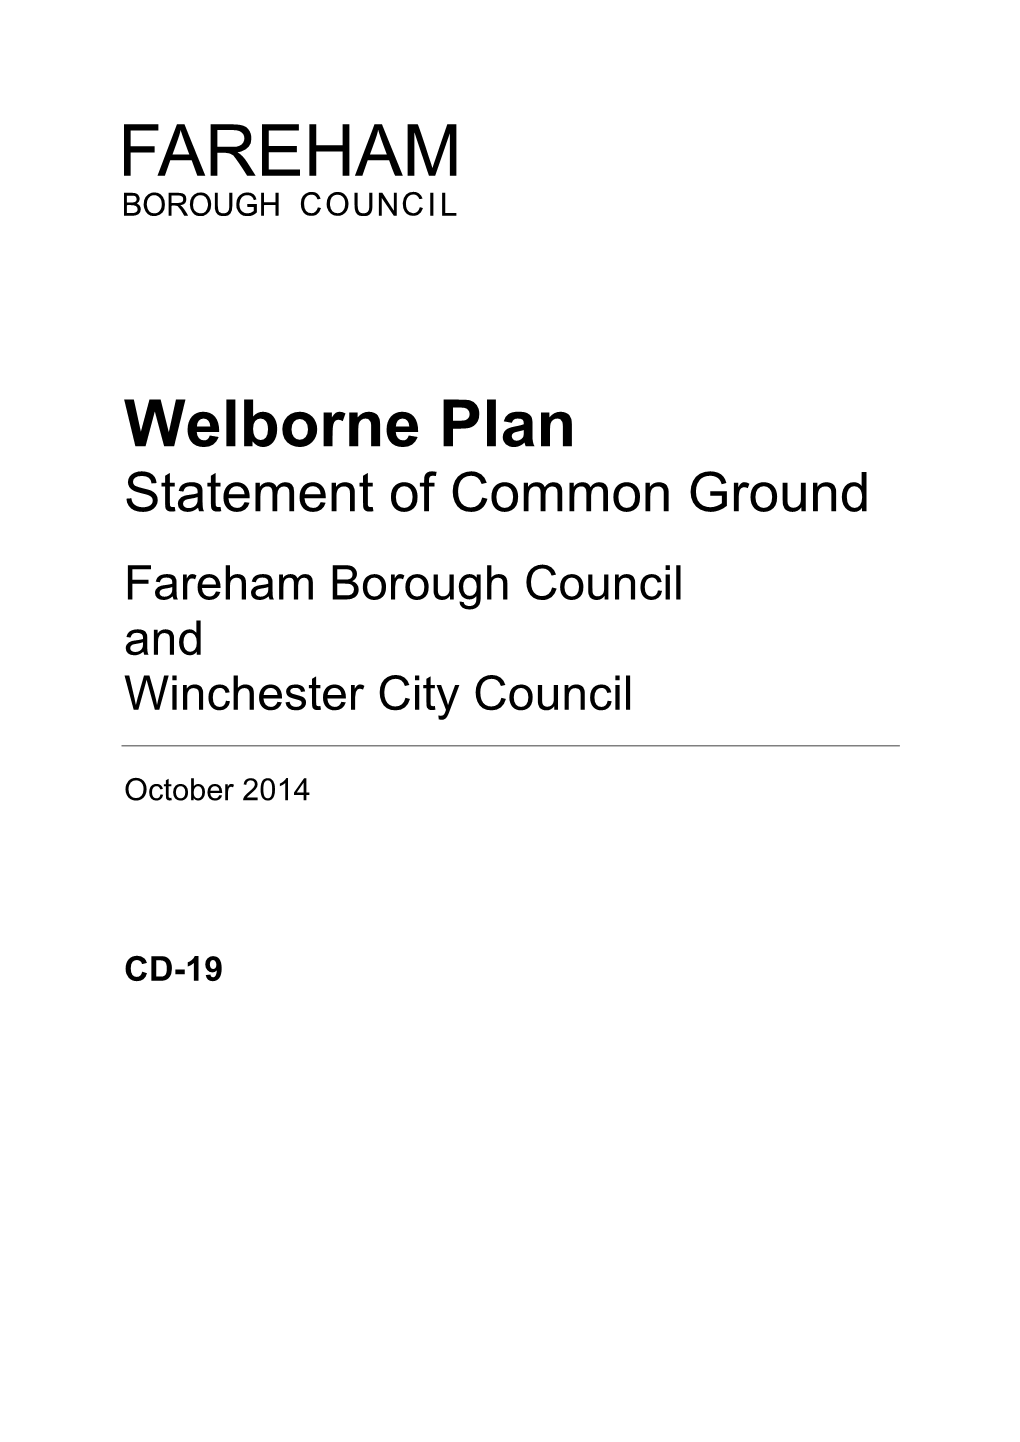 Welborne Plan Statement of Common Ground